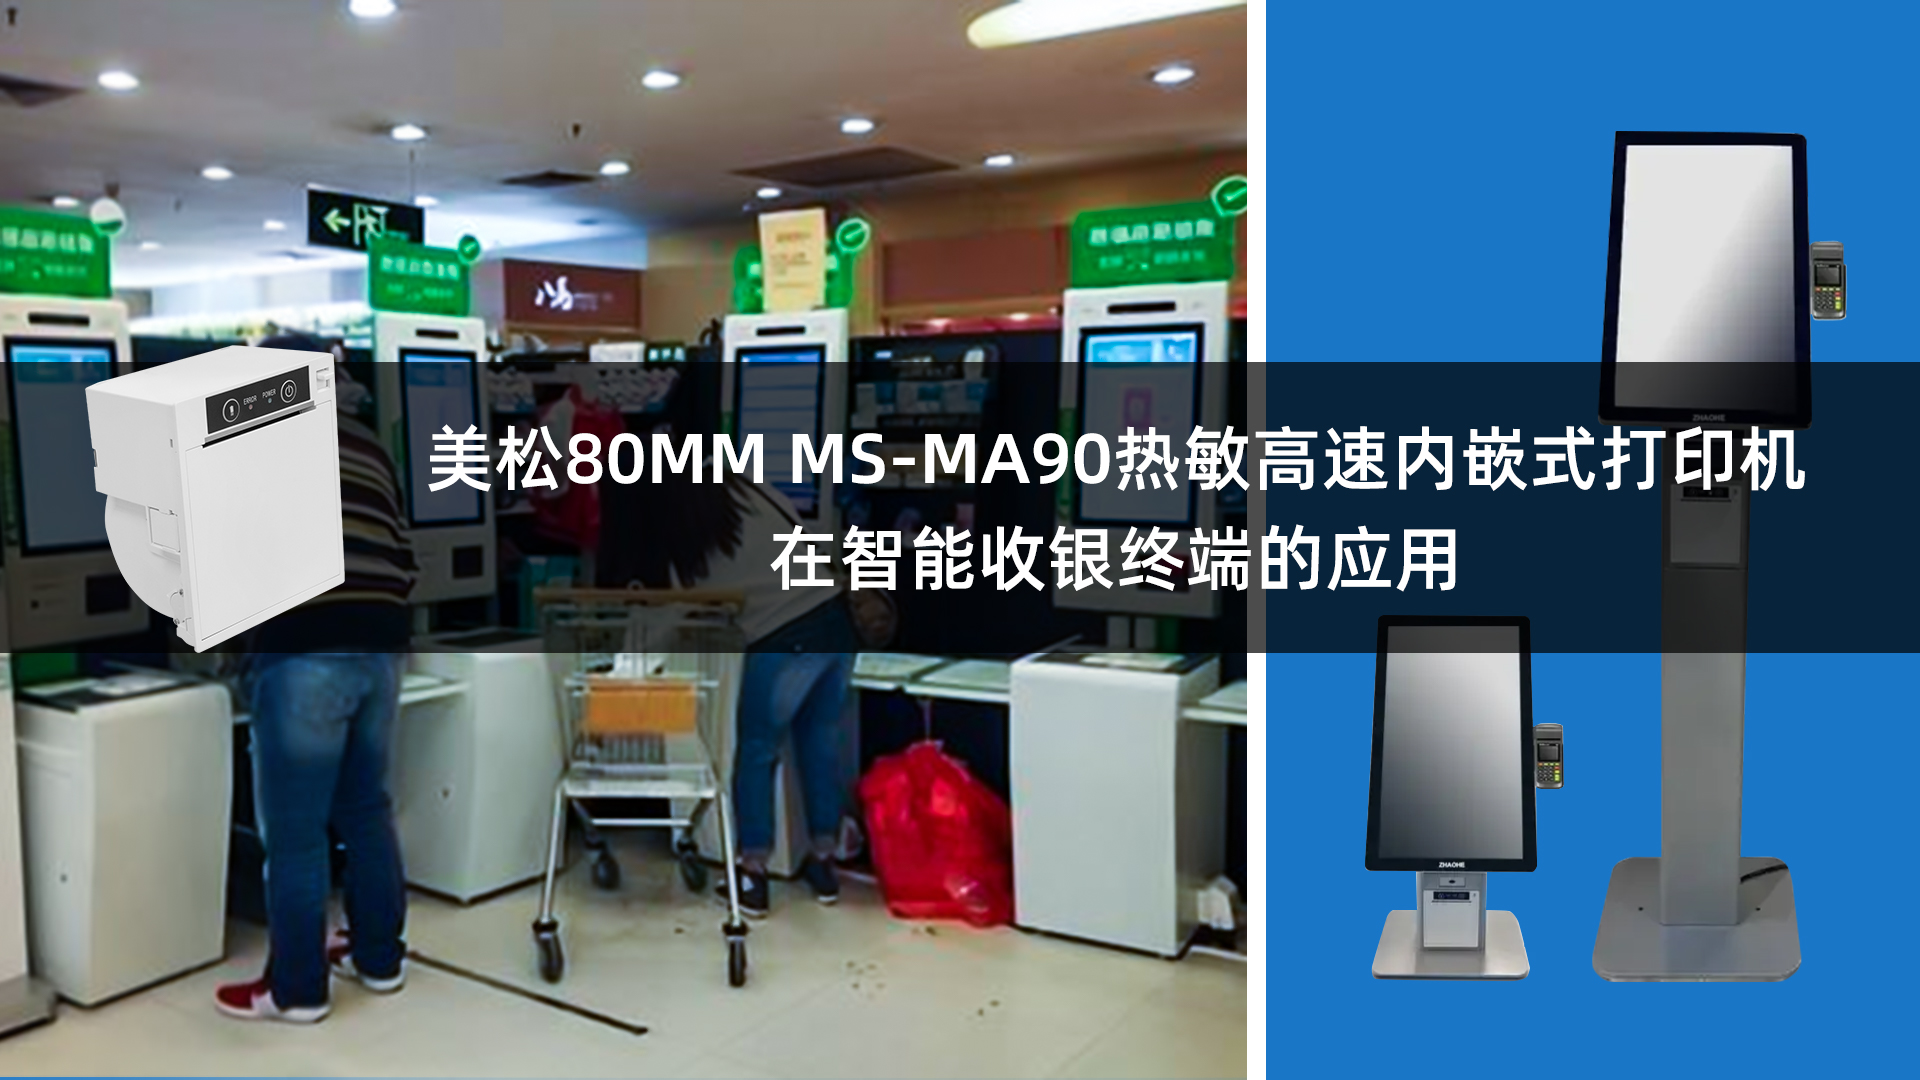 美松80MM热敏票据打印机MS-MA90嵌入在智能收银终端的应用